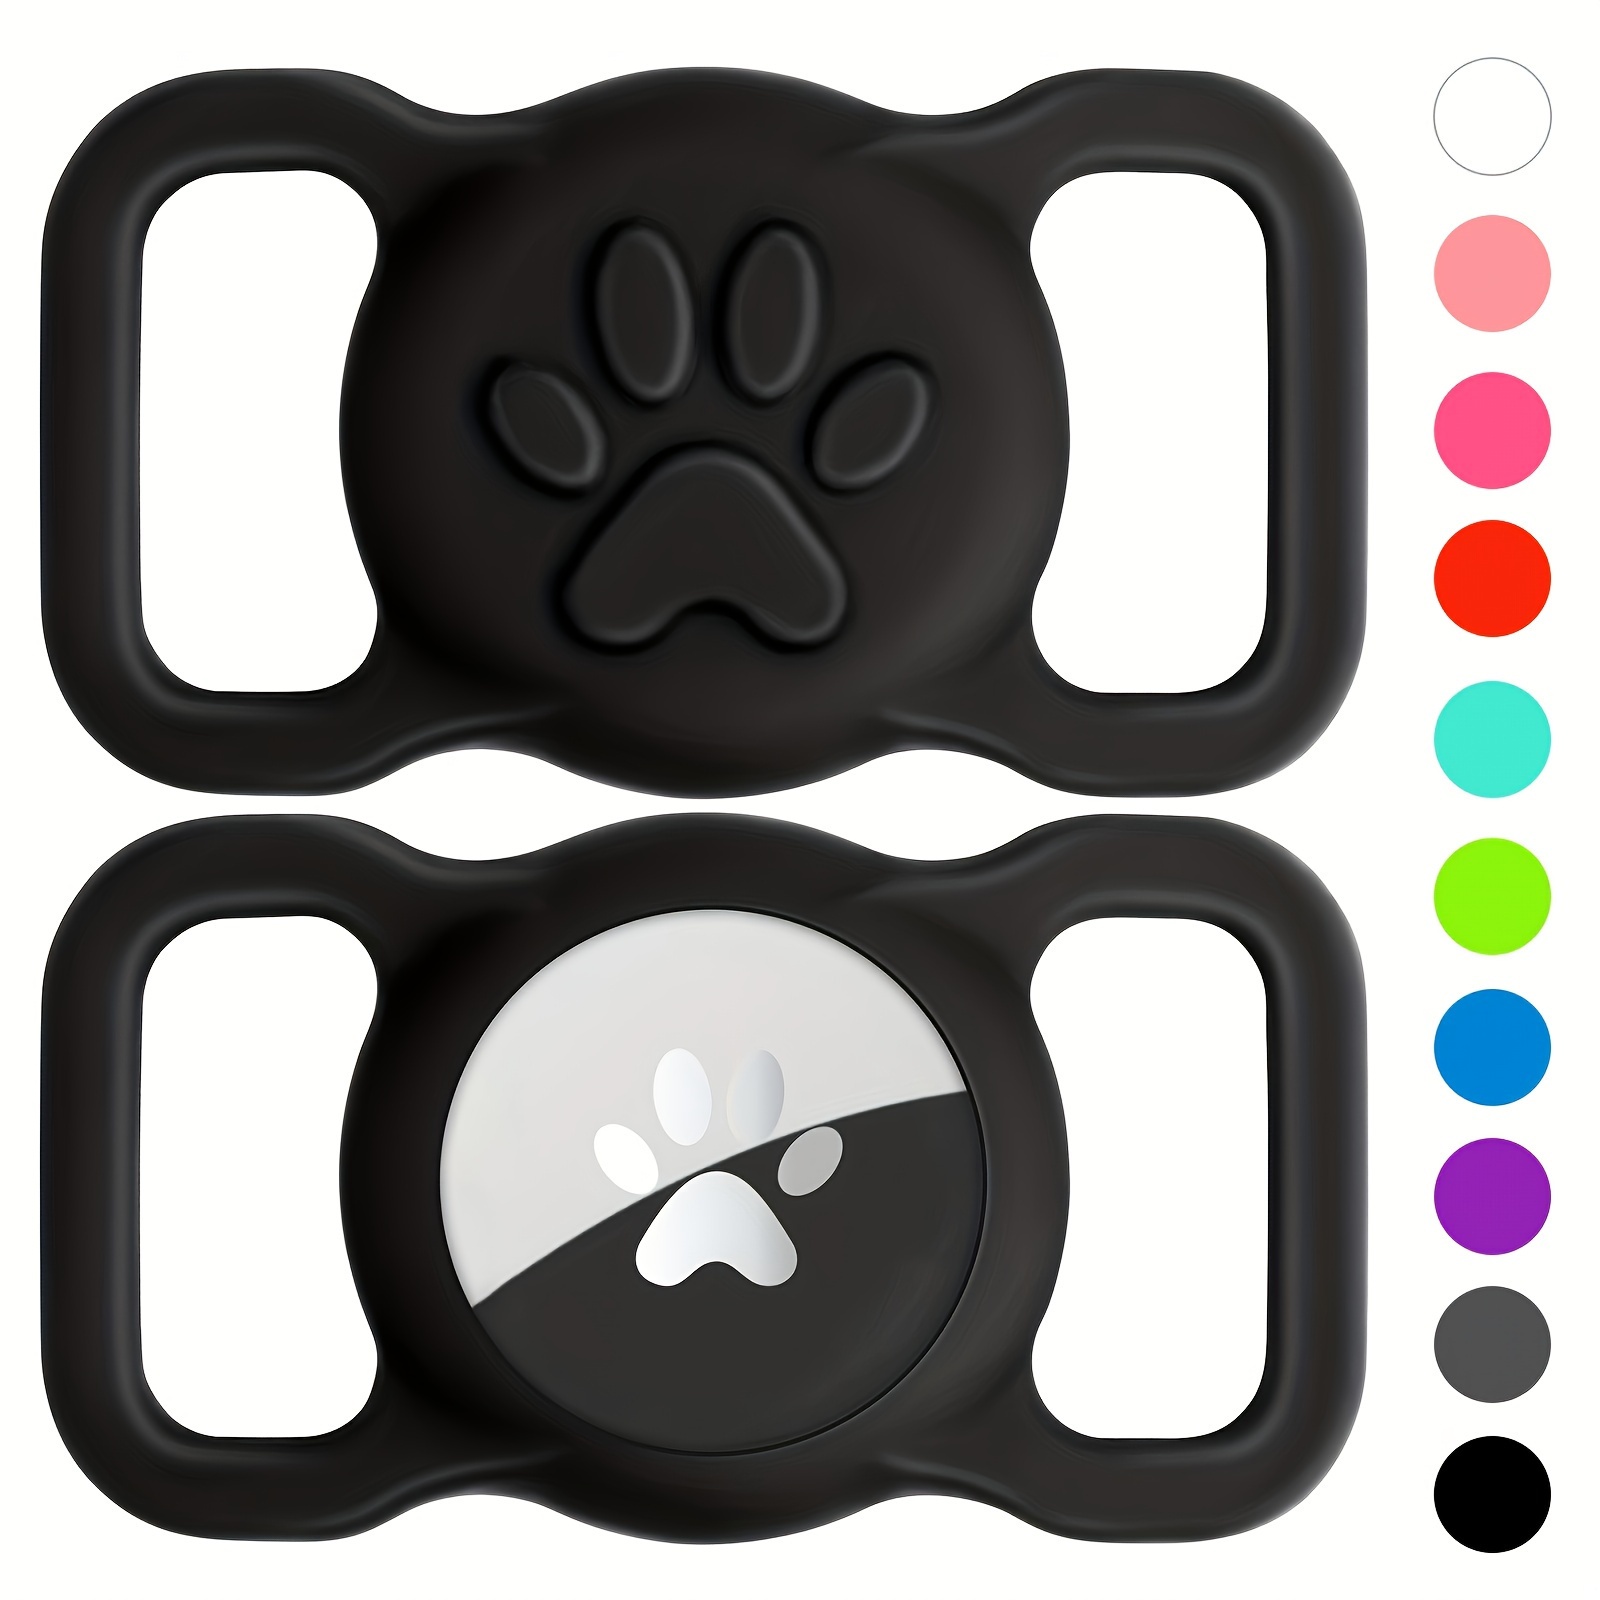 Collar reflectante Airtag para perro, soporte de silicona suave de alta  calidad con collar de nailon transpirable para mascotas Apple Airtag, funda